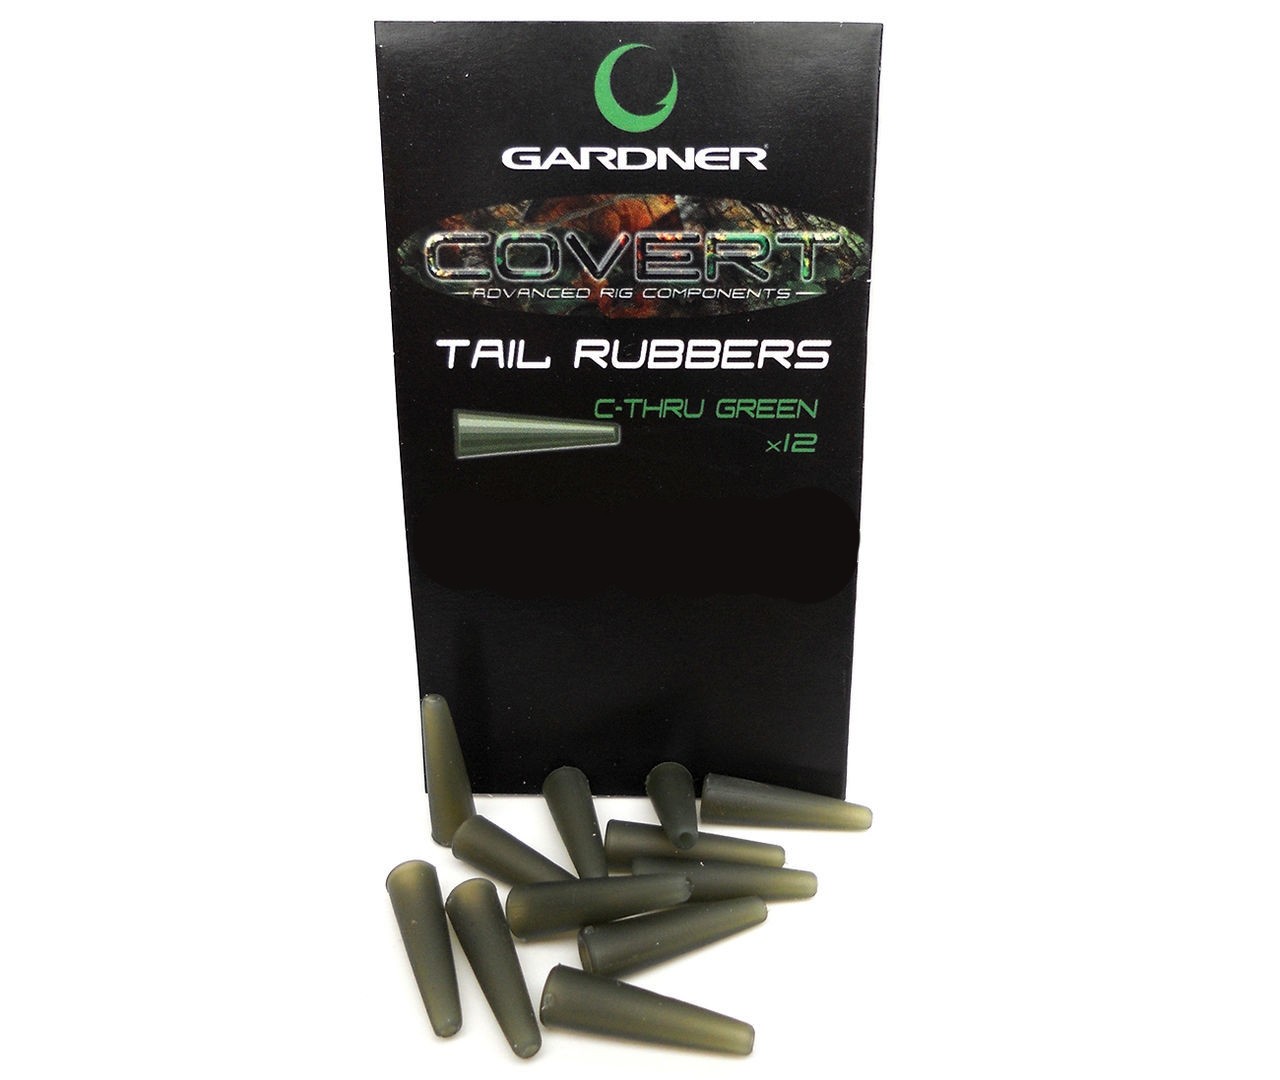 Конус Gardner Covert tail rubbers c-thru green для клипсы - фото 1